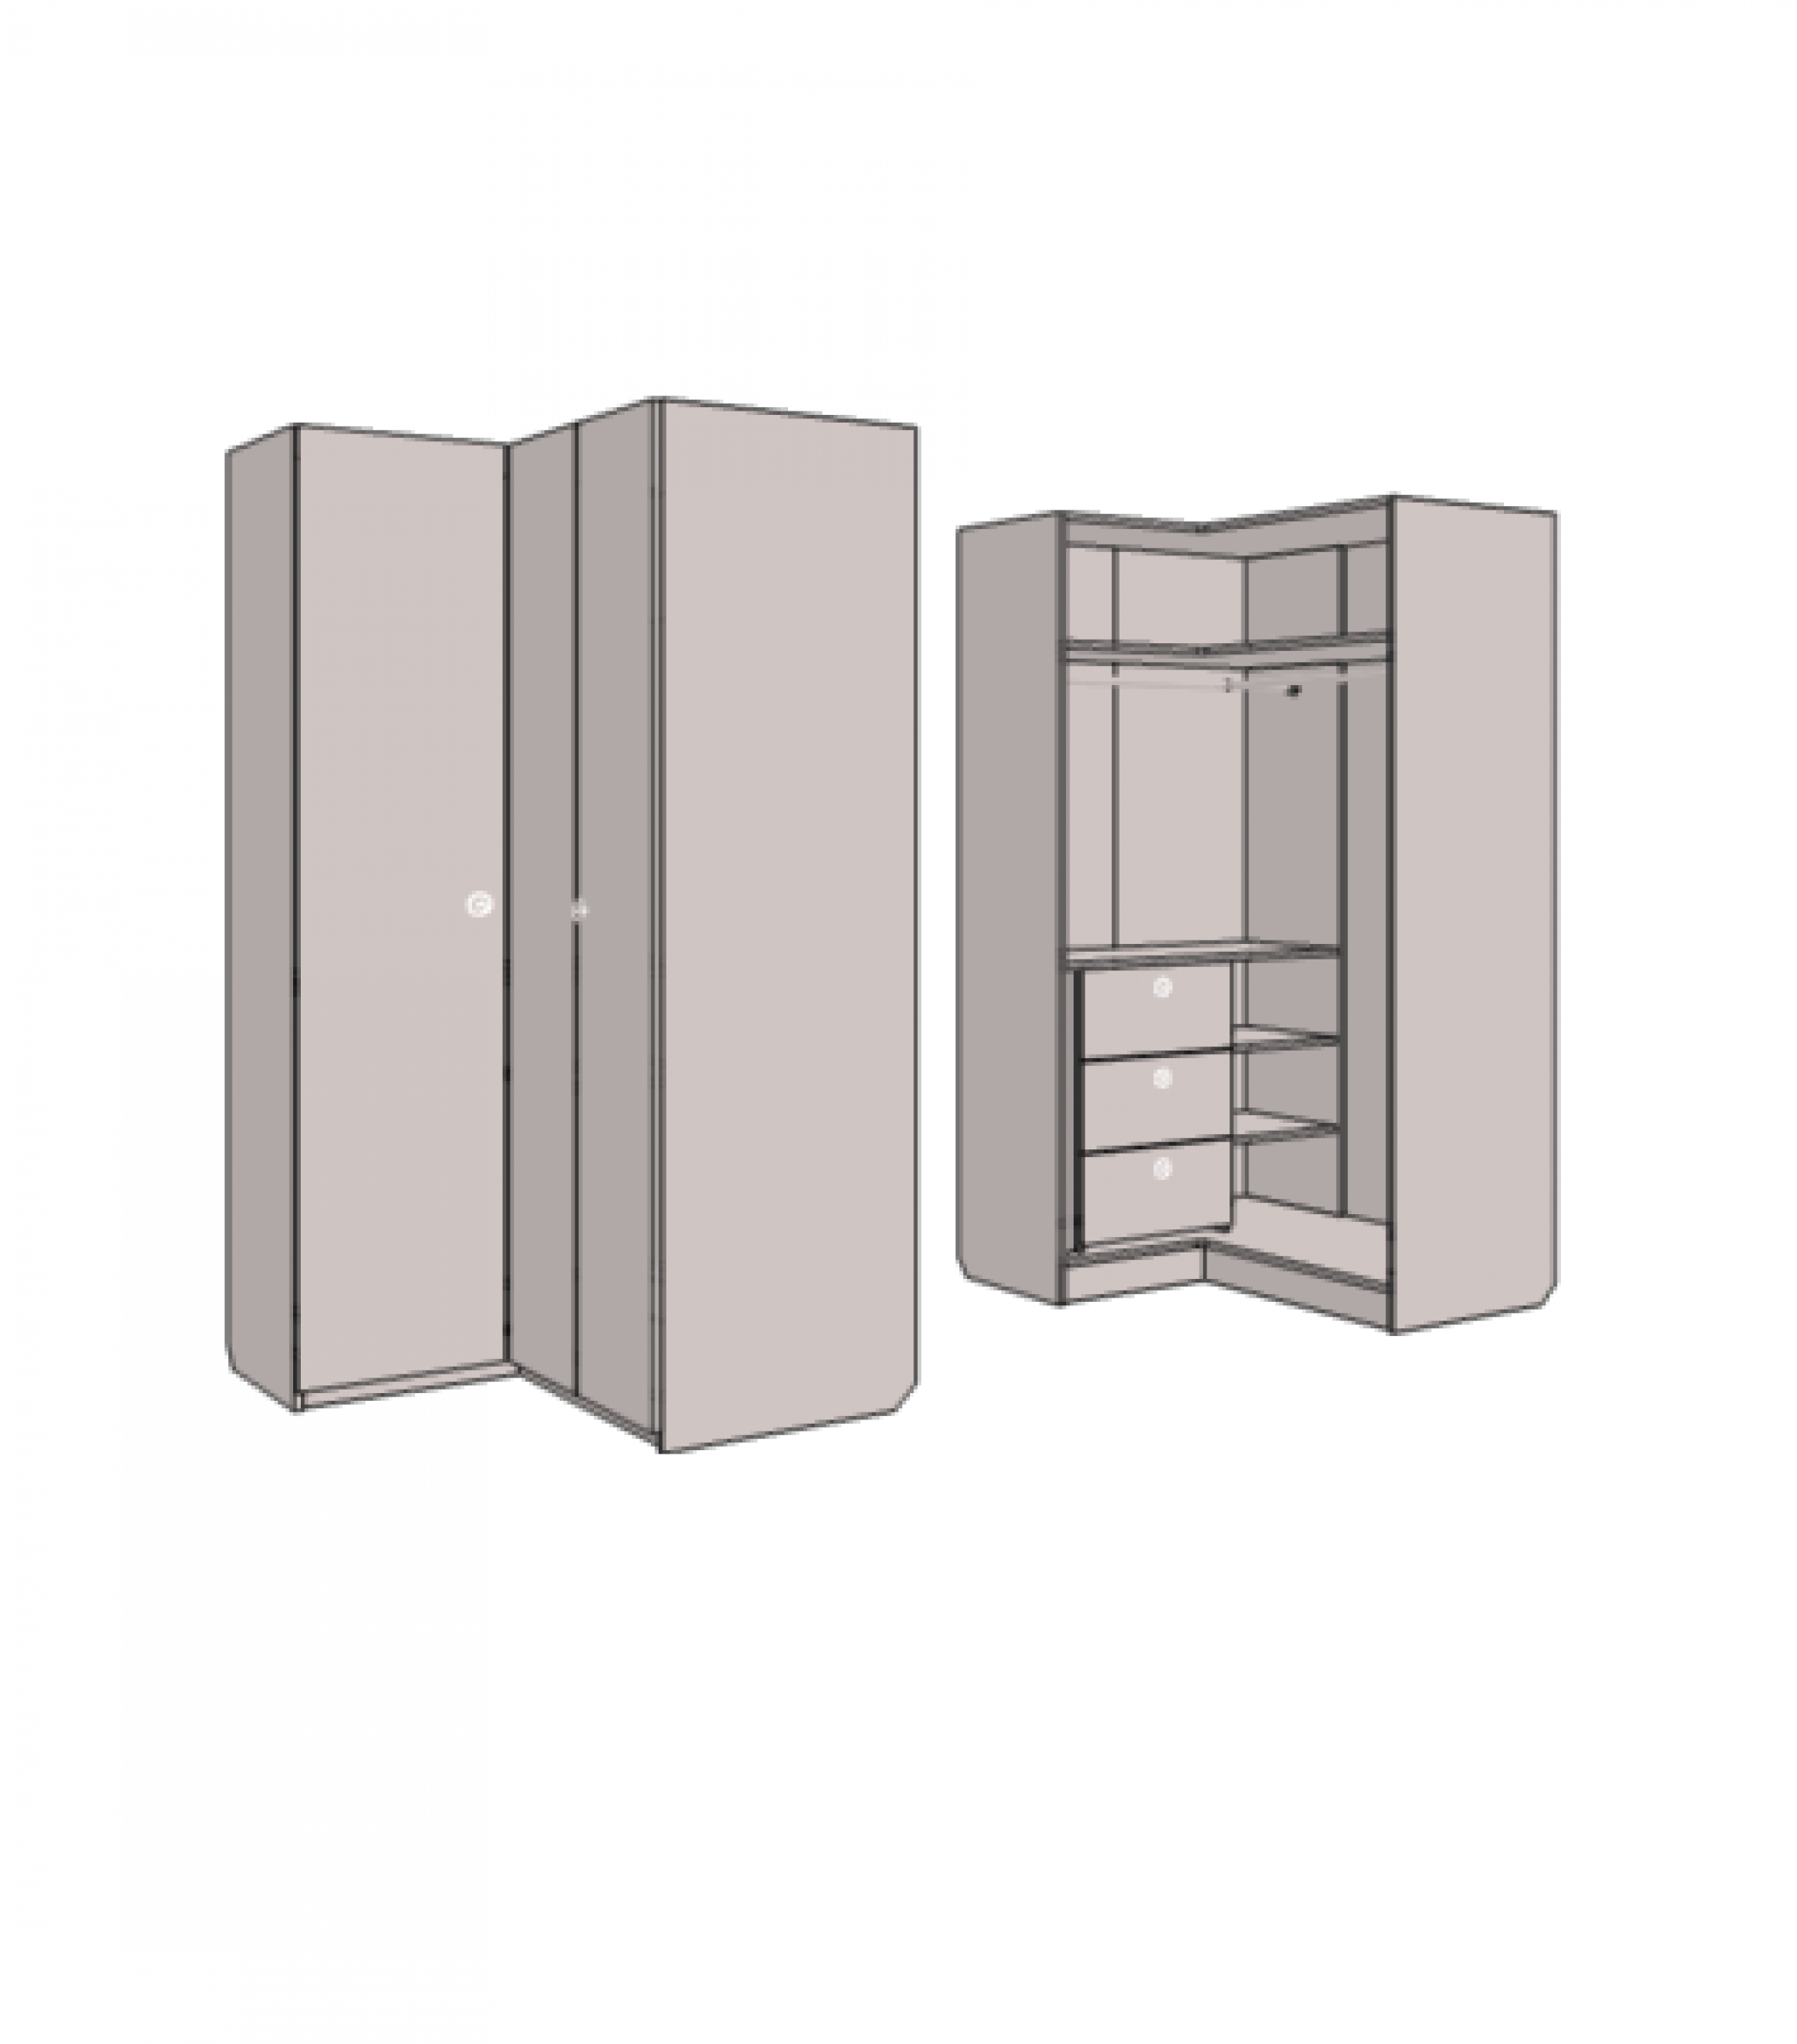 Шкаф - гардероб угловой с 3-мя внутренними ящиками. Артикул: VSU_12L/R